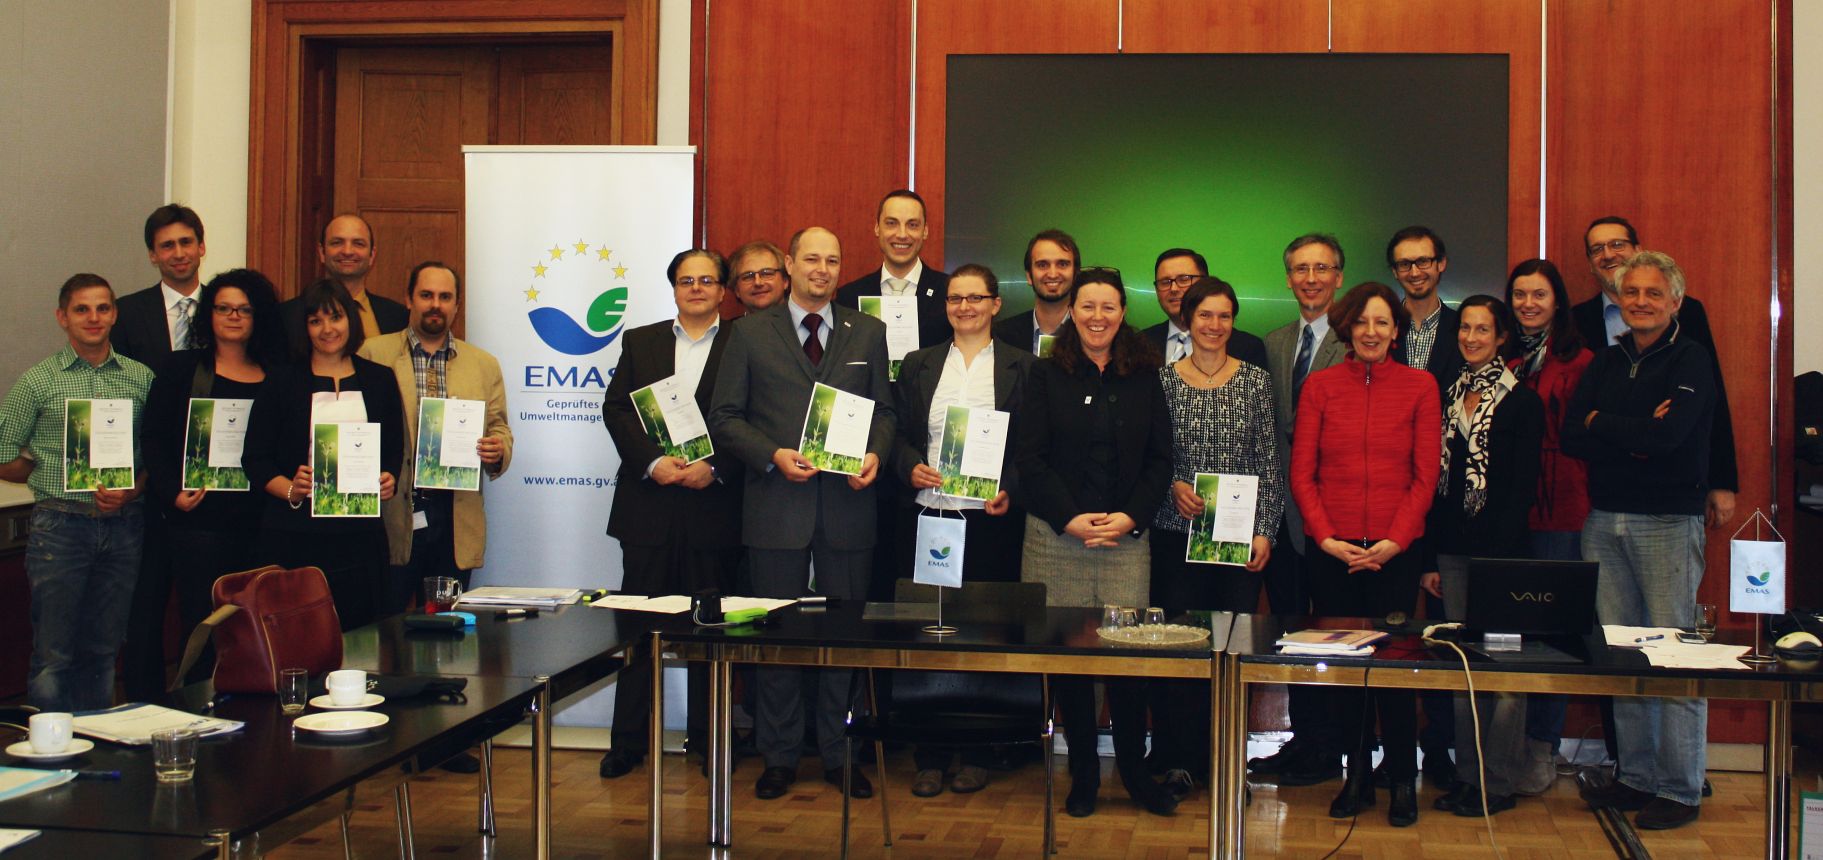 Gruppenfoto zur EMAS Abschlussveranstaltung 2015